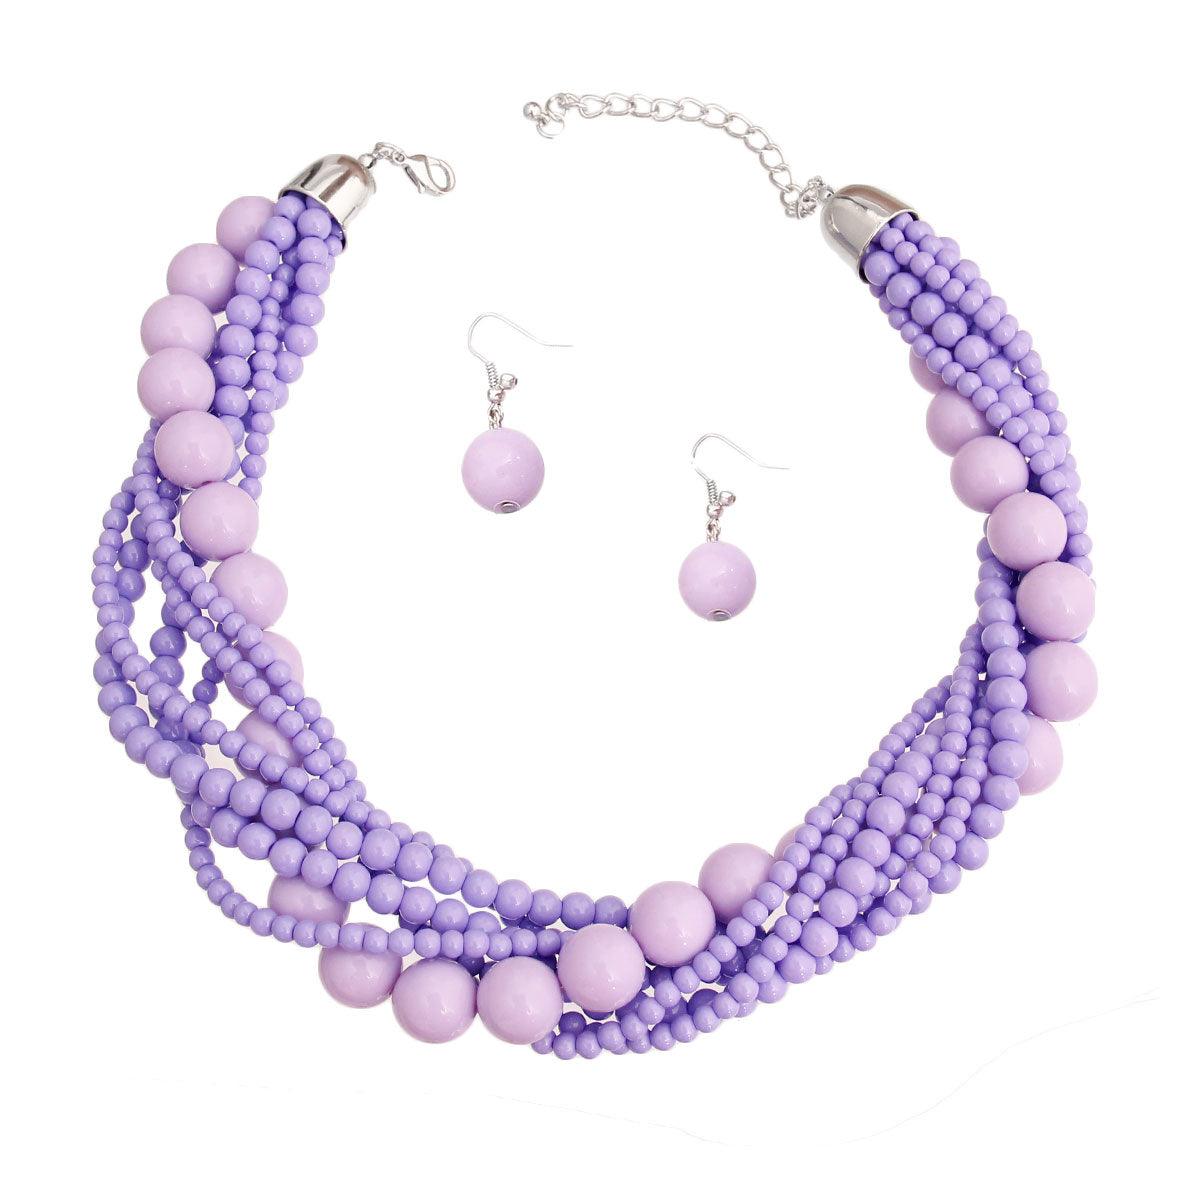 Lavender Bead Torsadé Necklace & Earrings Set: Stylish, Elegant & Unique